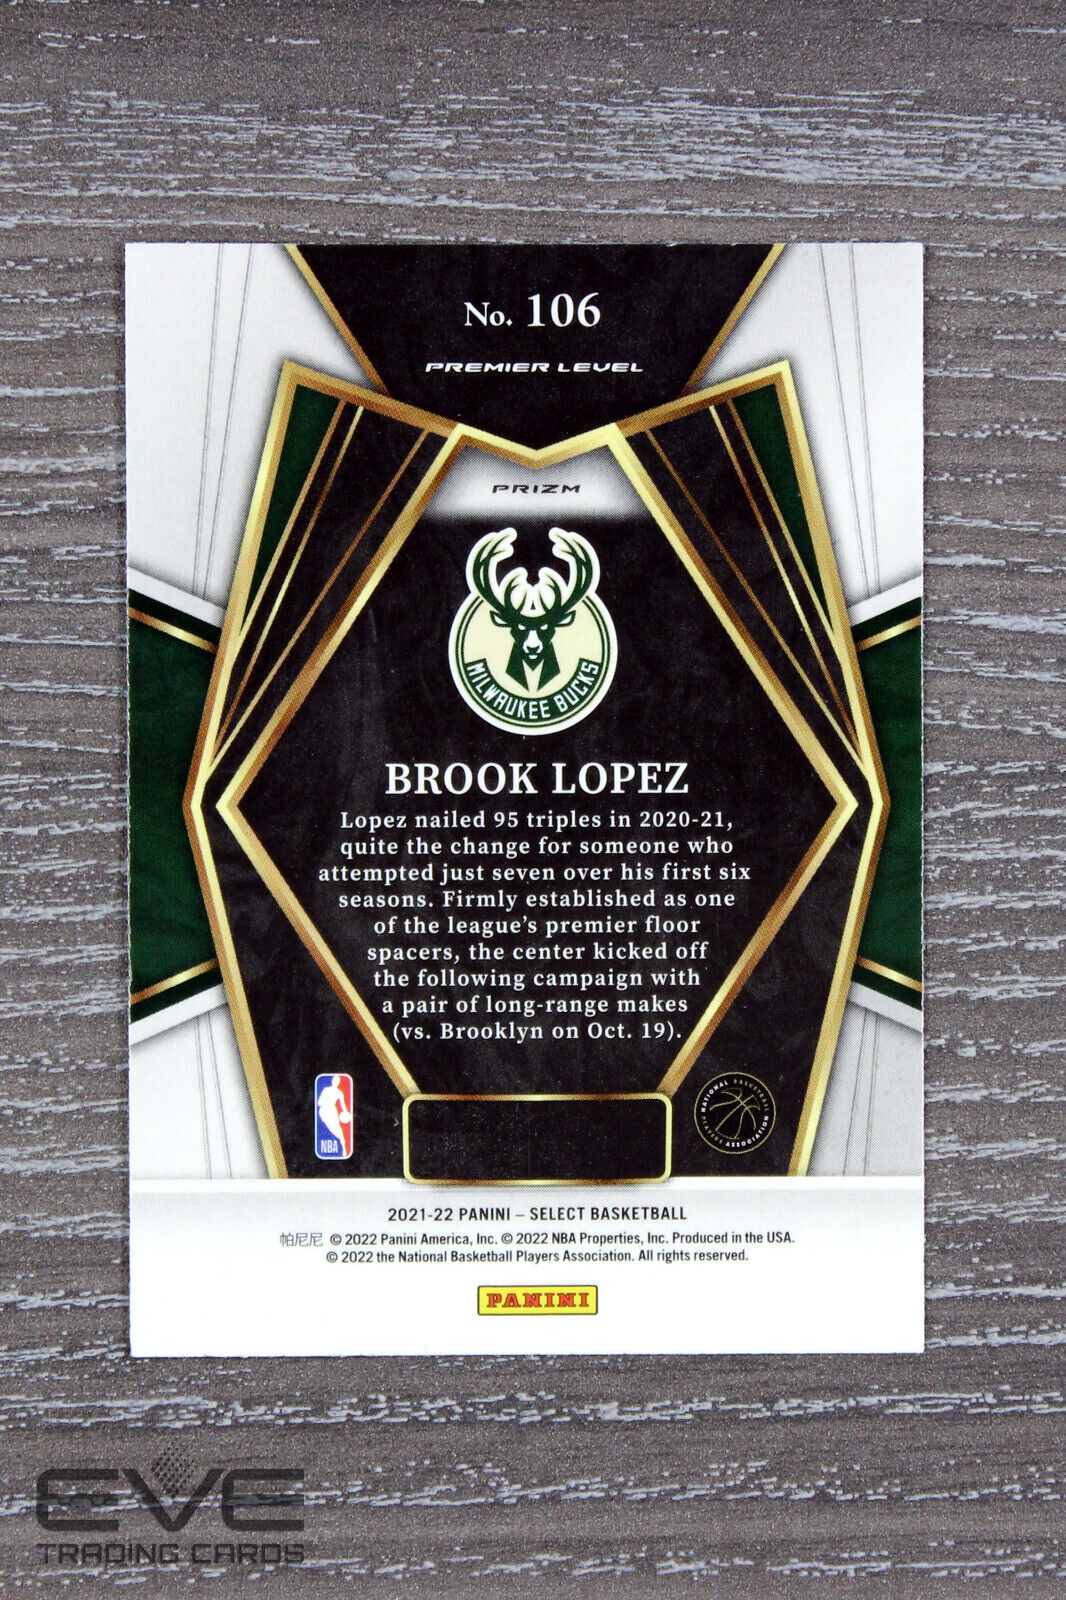 2021-22 Panini NBA Select Basketball #106 Brook Lopez Silver Prizm Premier NM/M